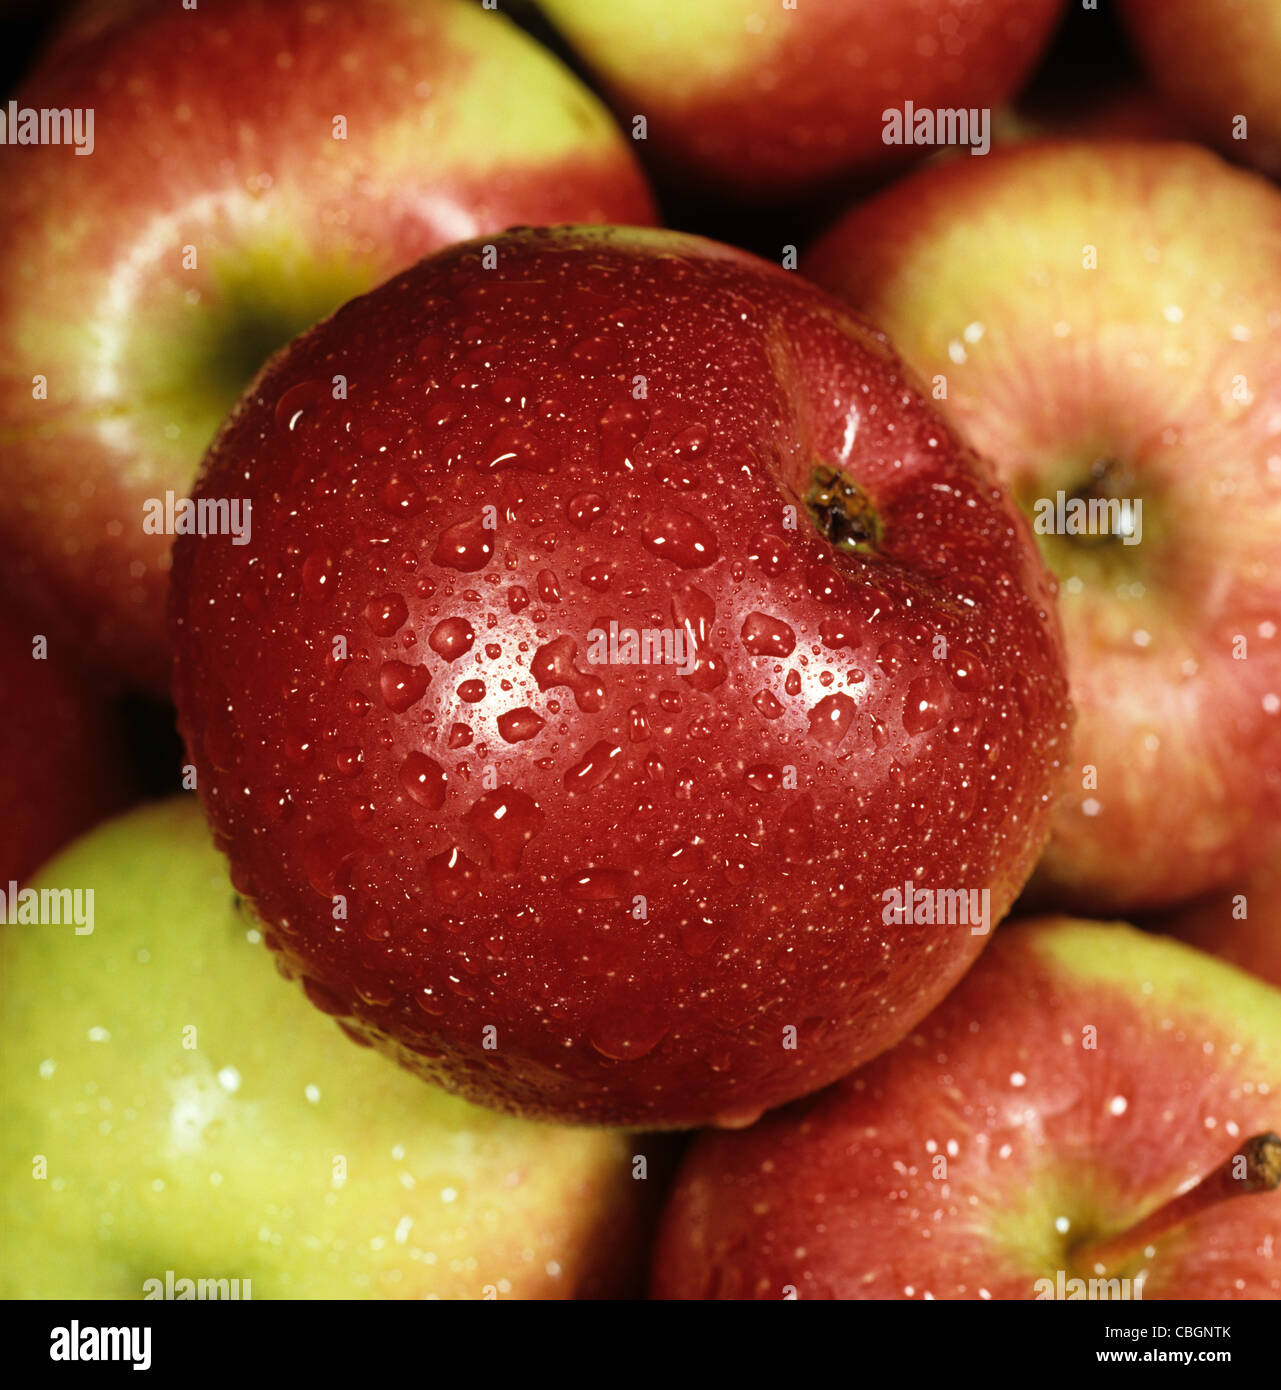 Apple, frutto di una varietà canadese, ex shop, con goccioline di acqua Foto Stock